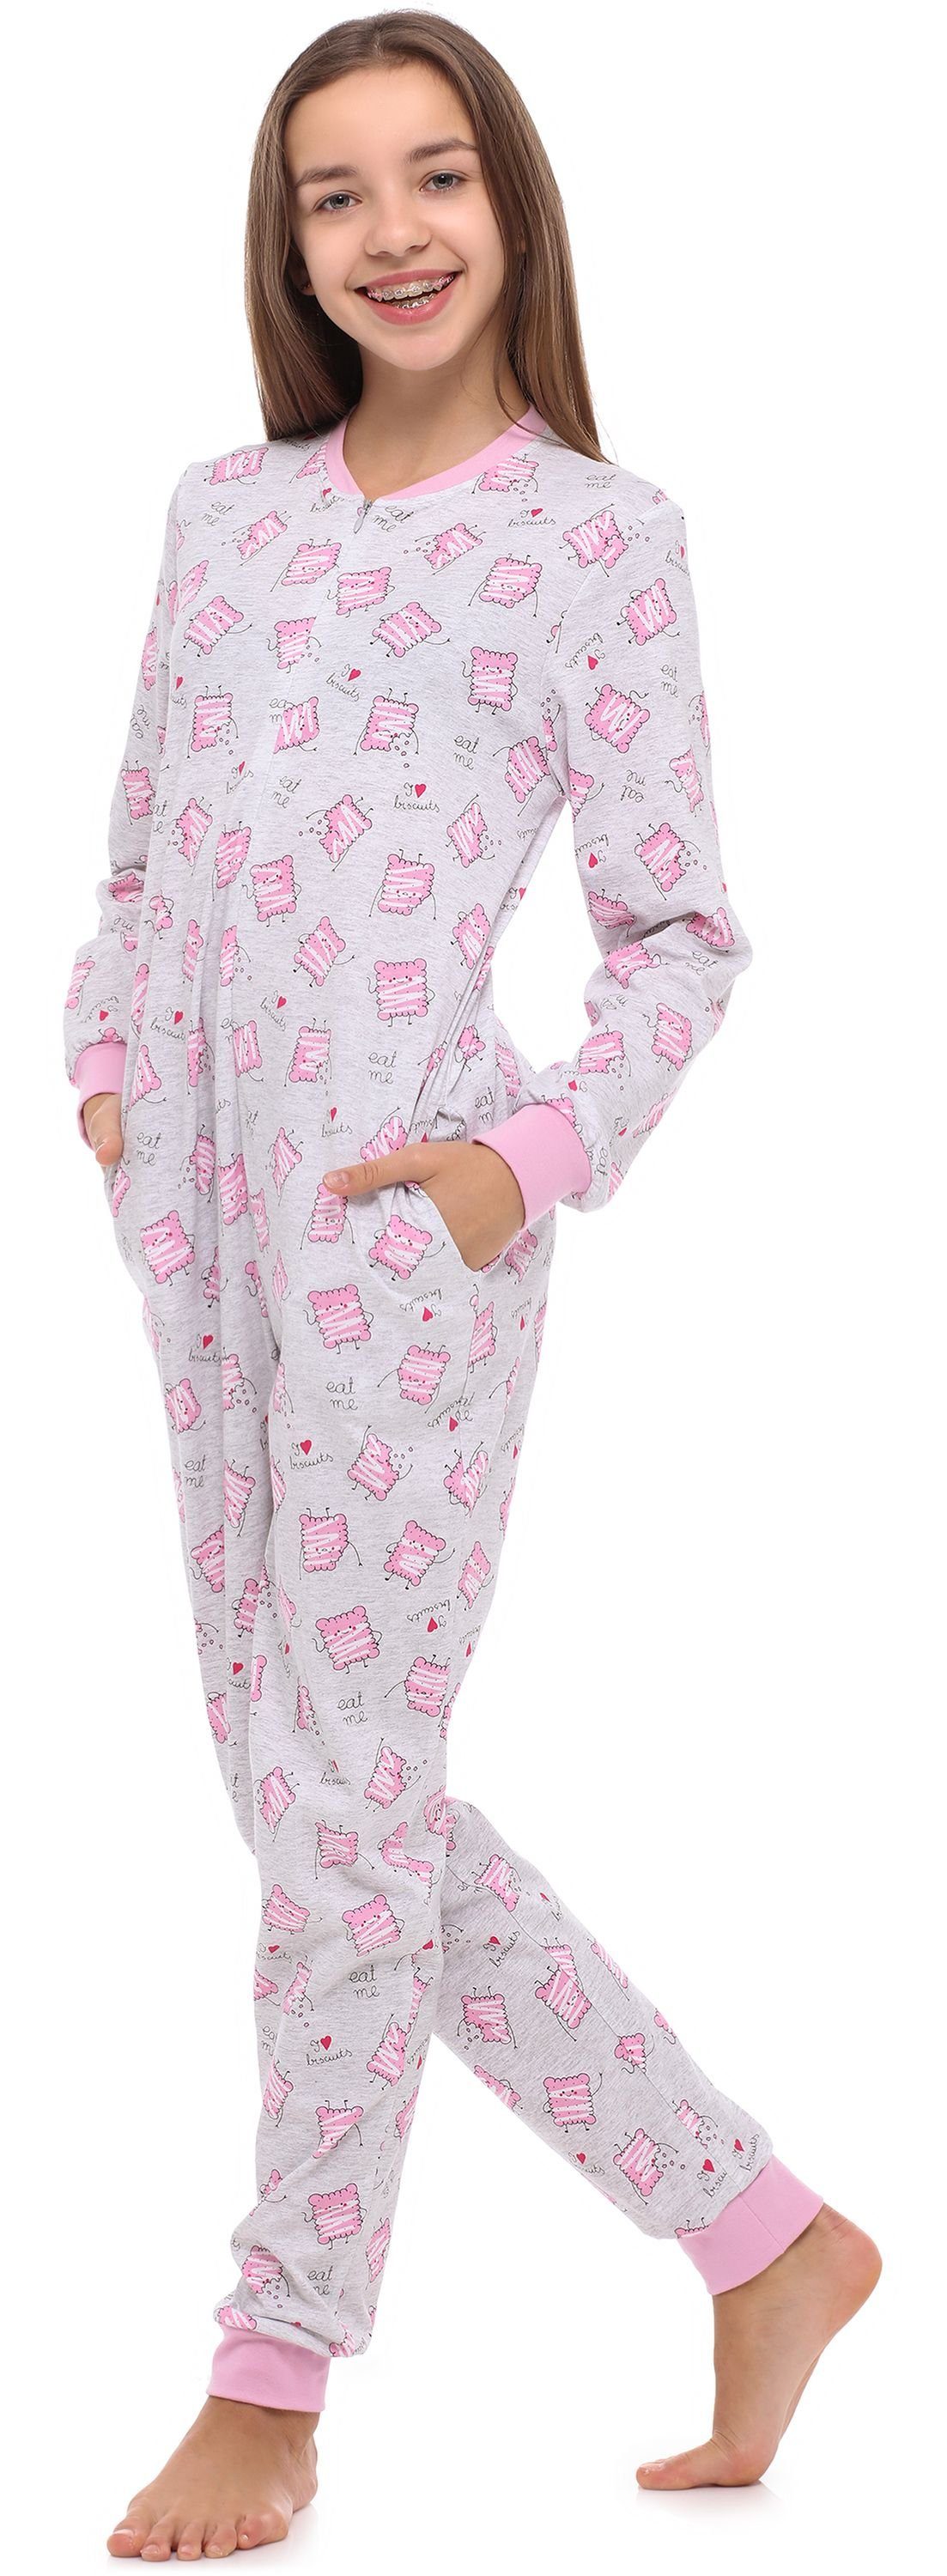 Schlafanzug Schlafoverall Merry Melange/Kekse Schlafanzug Jugend Mädchen MS10-235 Style